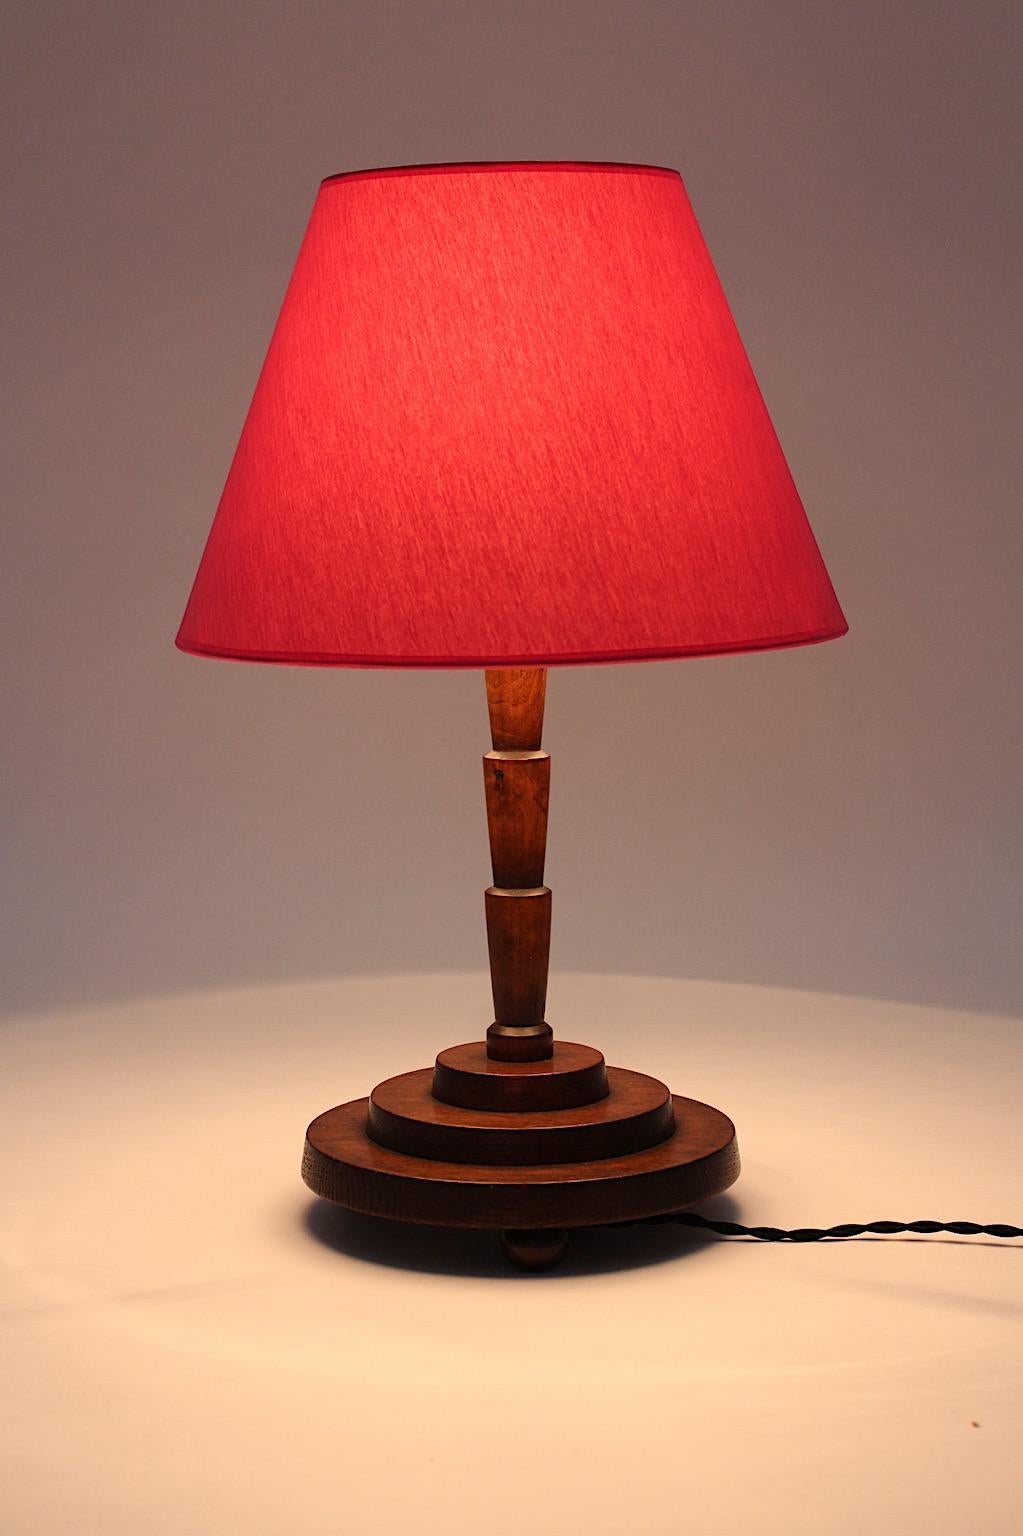 Lampe de table Art Déco vintage en chêne teinté brun, base géométrique et garniture en laiton, Autriche des années 1930.
Tandis que le pas géométrique comme la tige de la lampe de table avec la garniture en laiton avec l'organique
l'effet